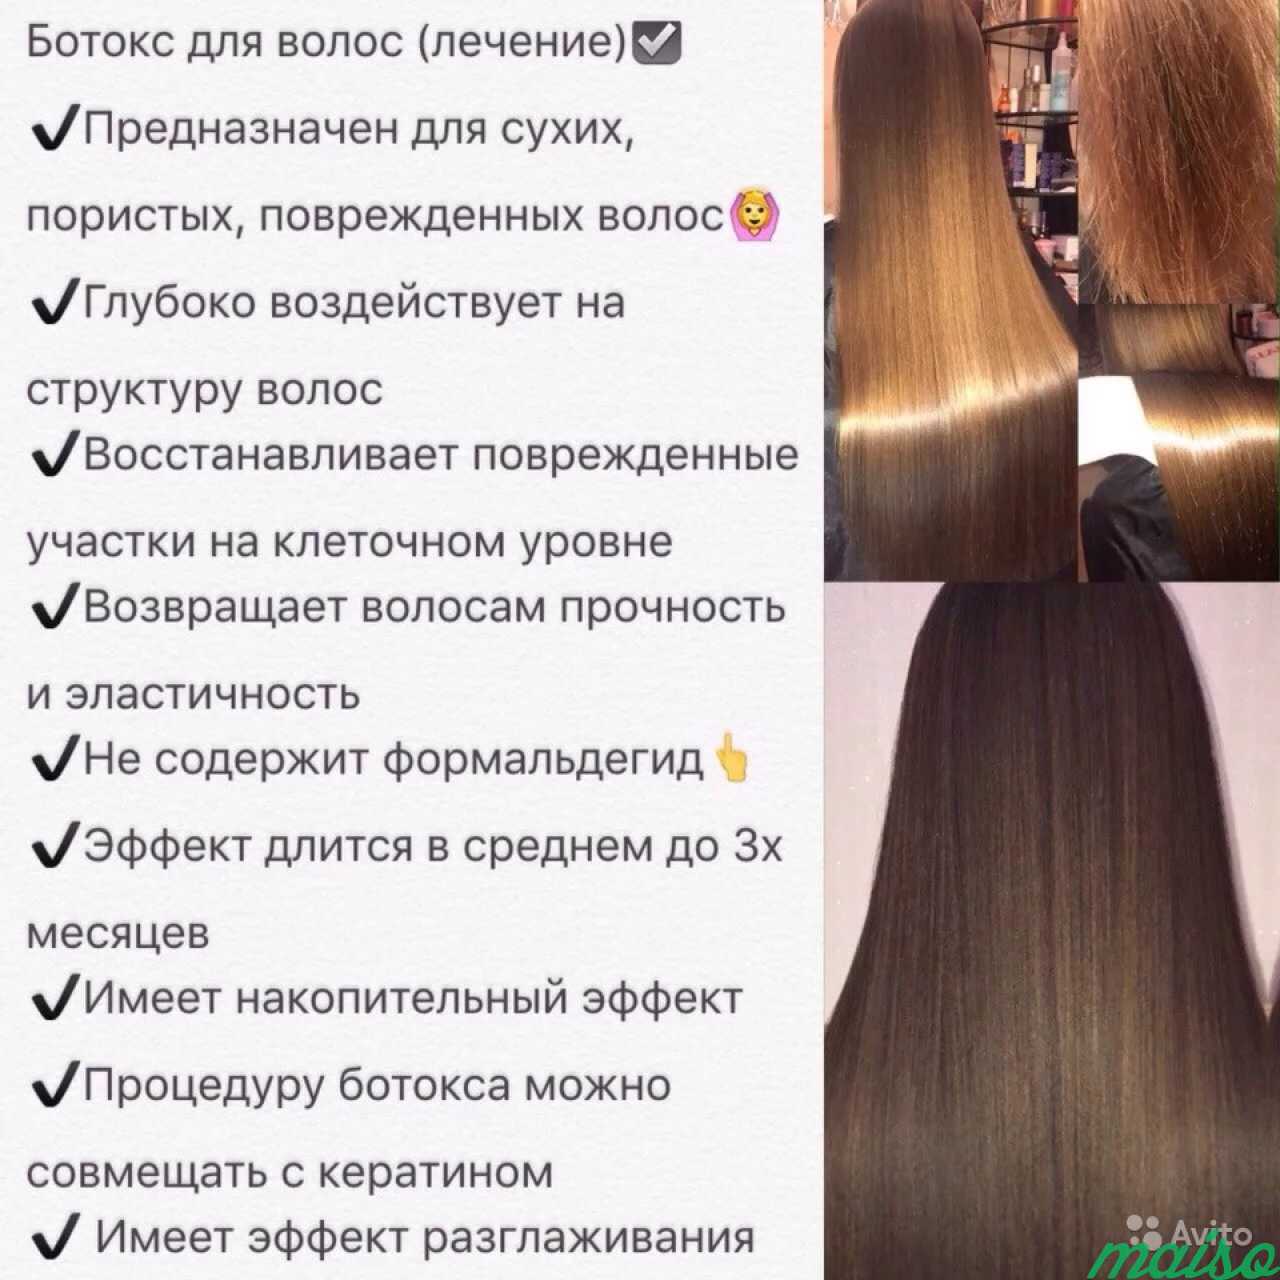 Ботокс.Кератин.Лечение.Восстановление волос в Санкт-Петербурге. Фото 5